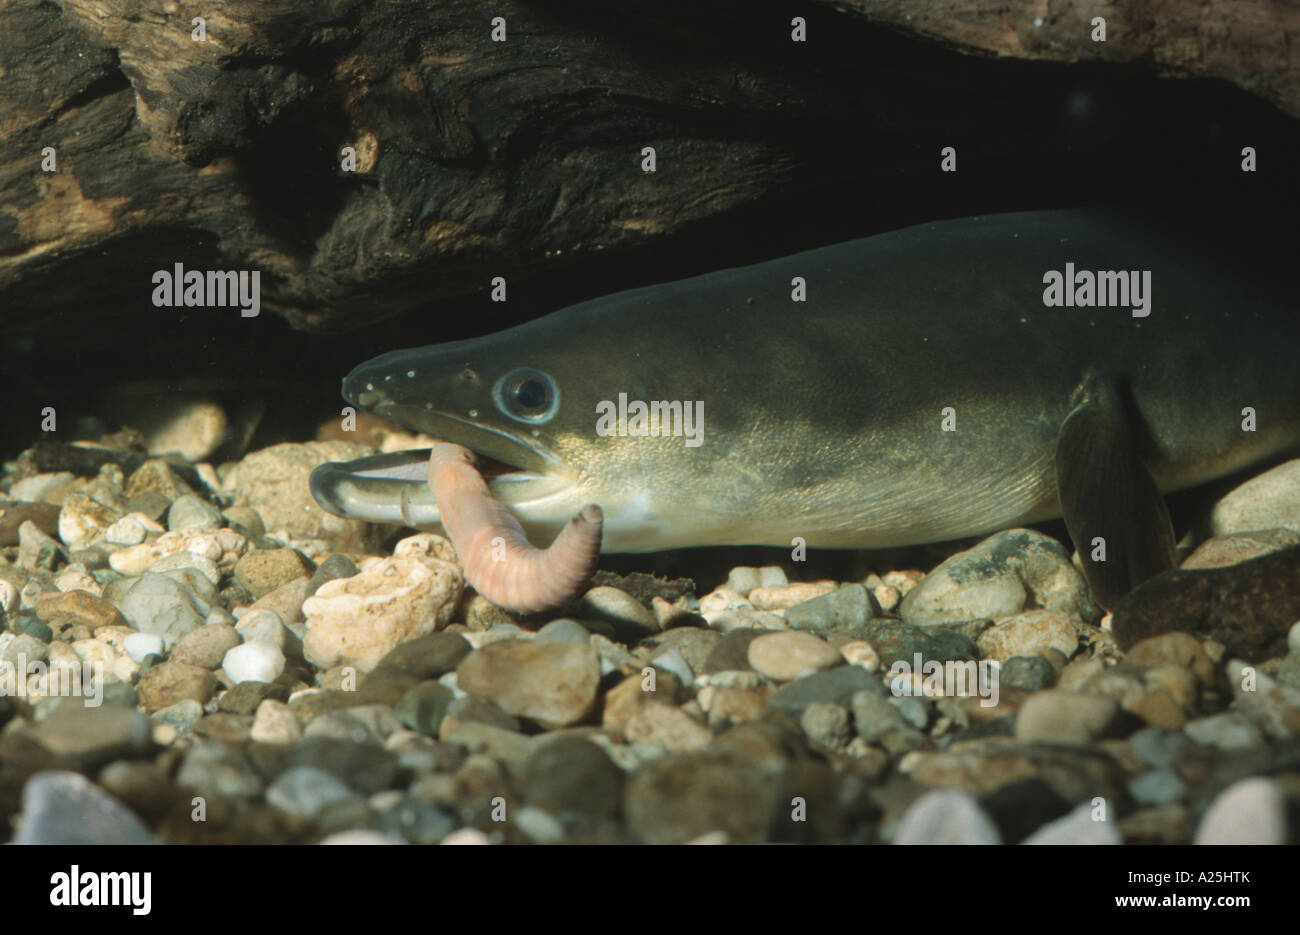 eel, European eel, river eel (Anguilla anguilla), feeding on a worm, Germany, Bavaria, Isental Stock Photo